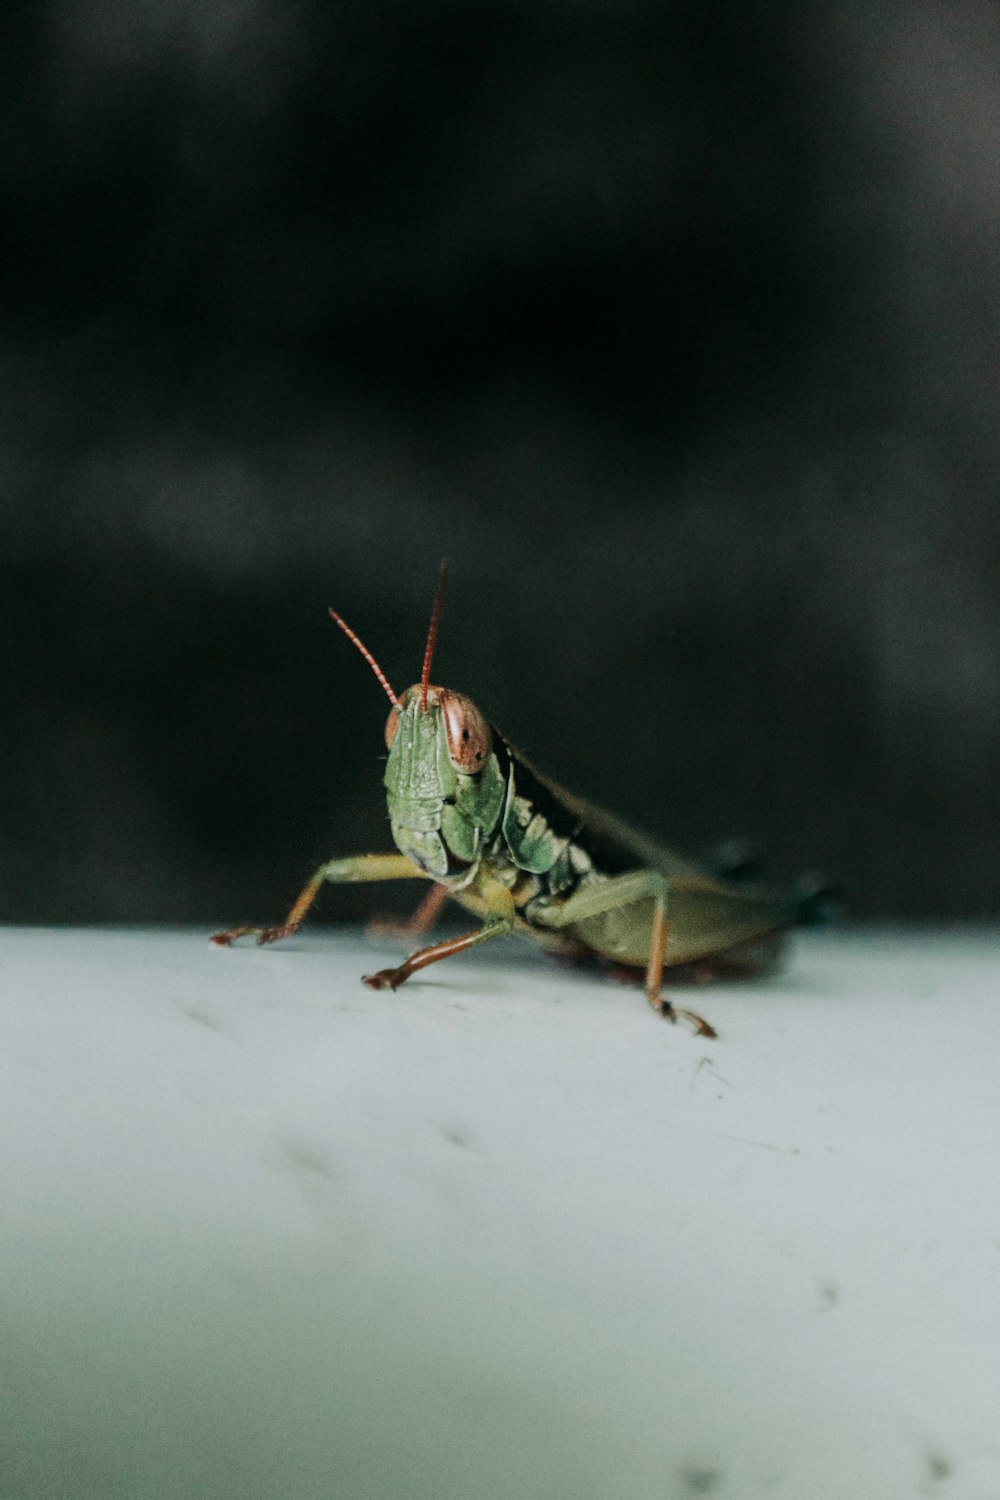 green grasshopper on white surface